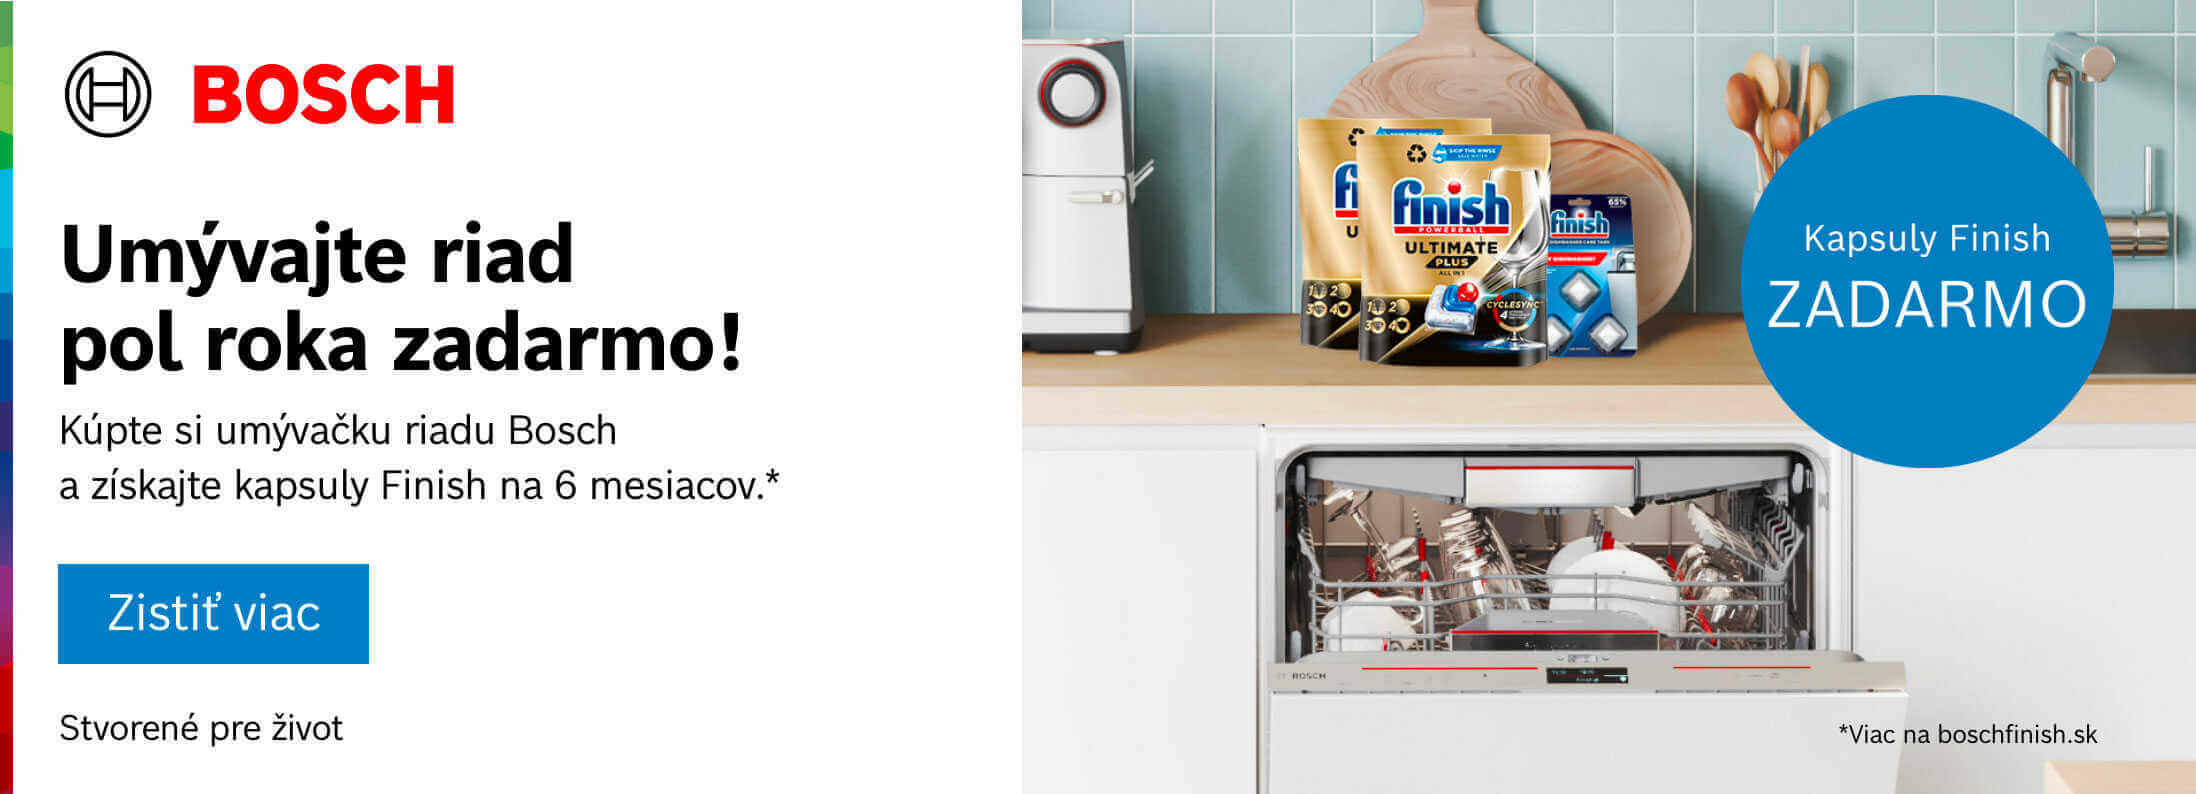 Bosch - Kúpte si umývačku riadu Bosch a získajte kapsuly Finish na 6 mesiacov